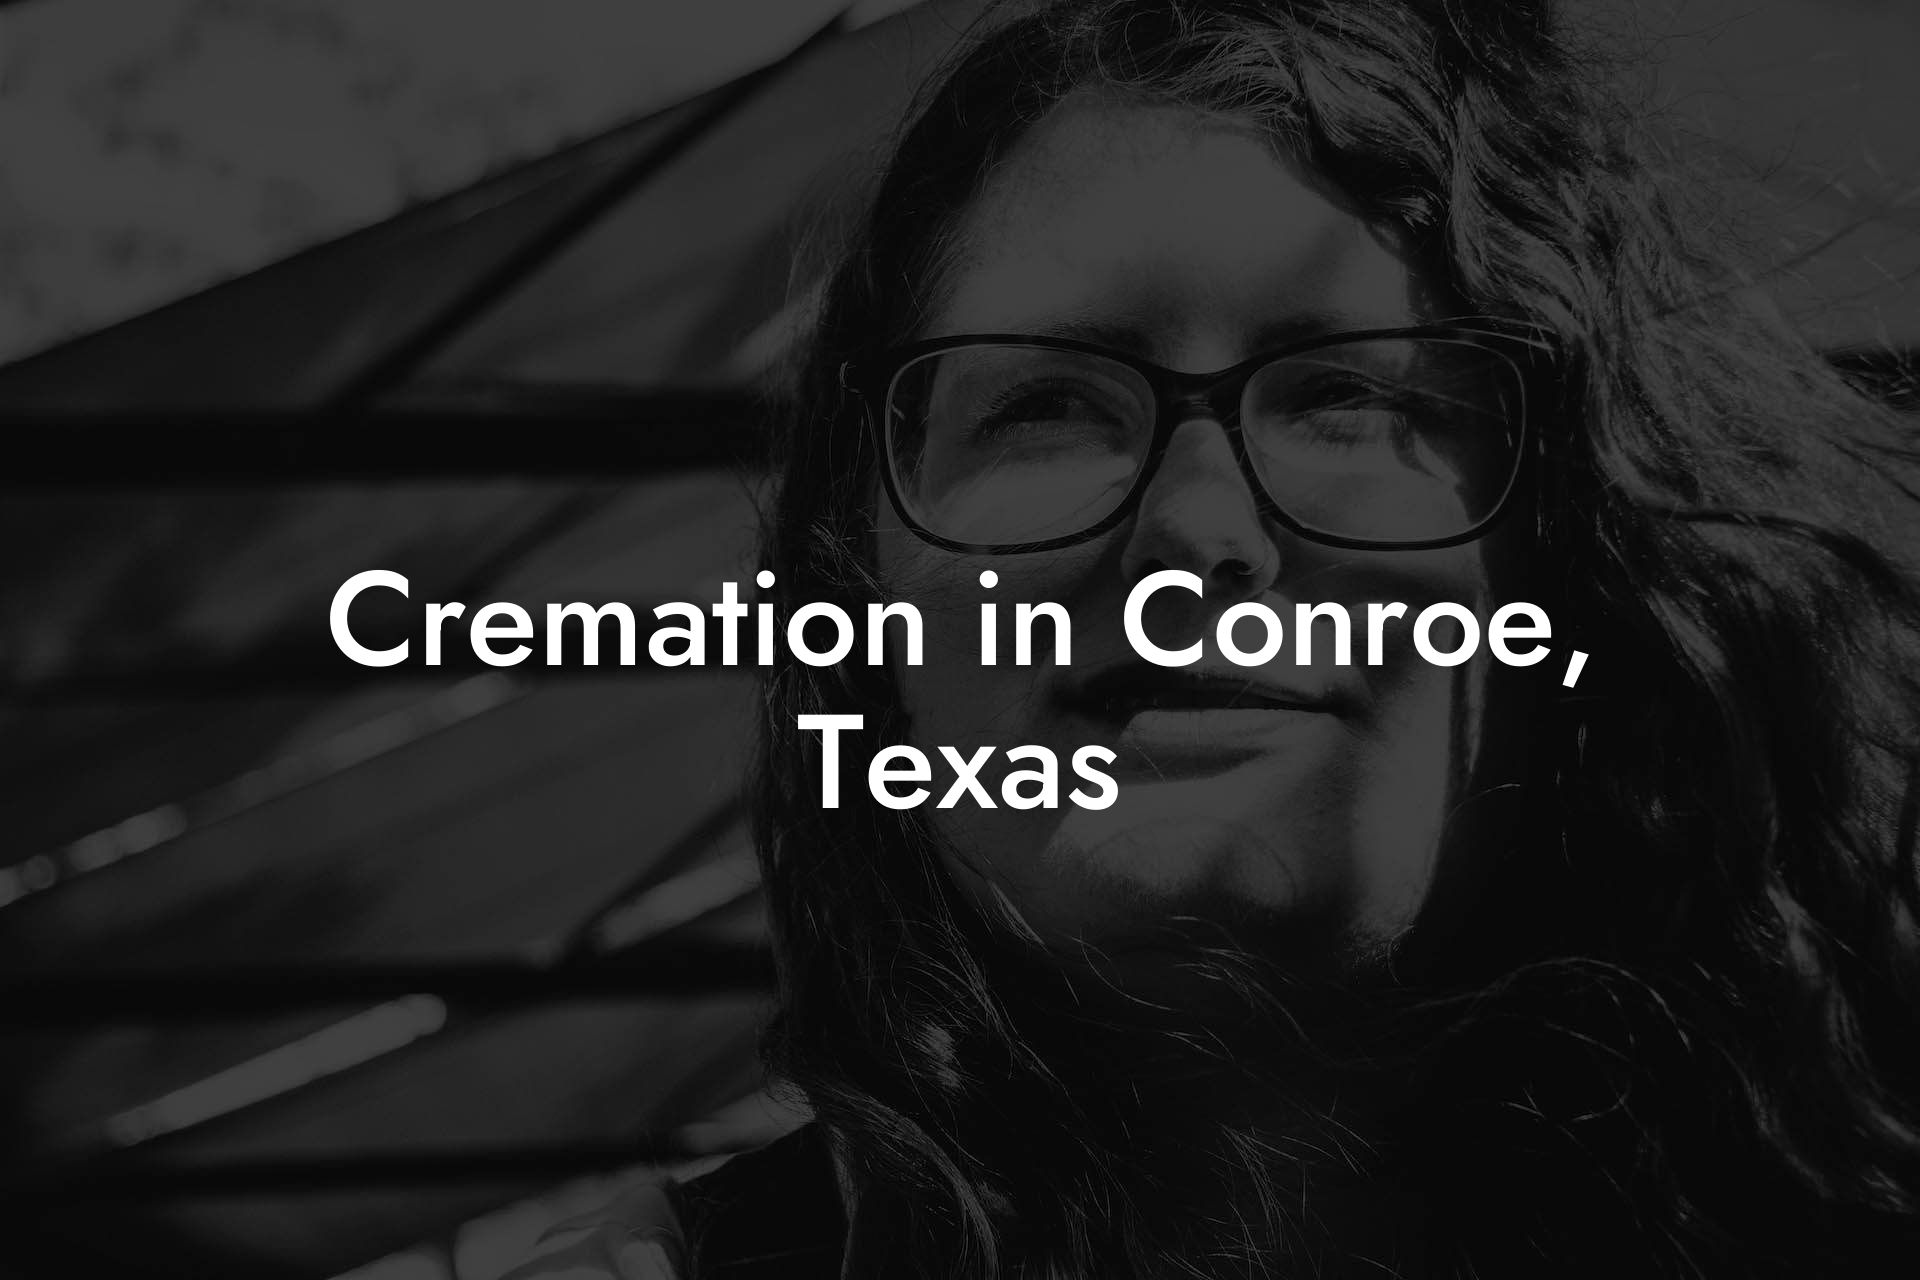 Cremation in Conroe, Texas